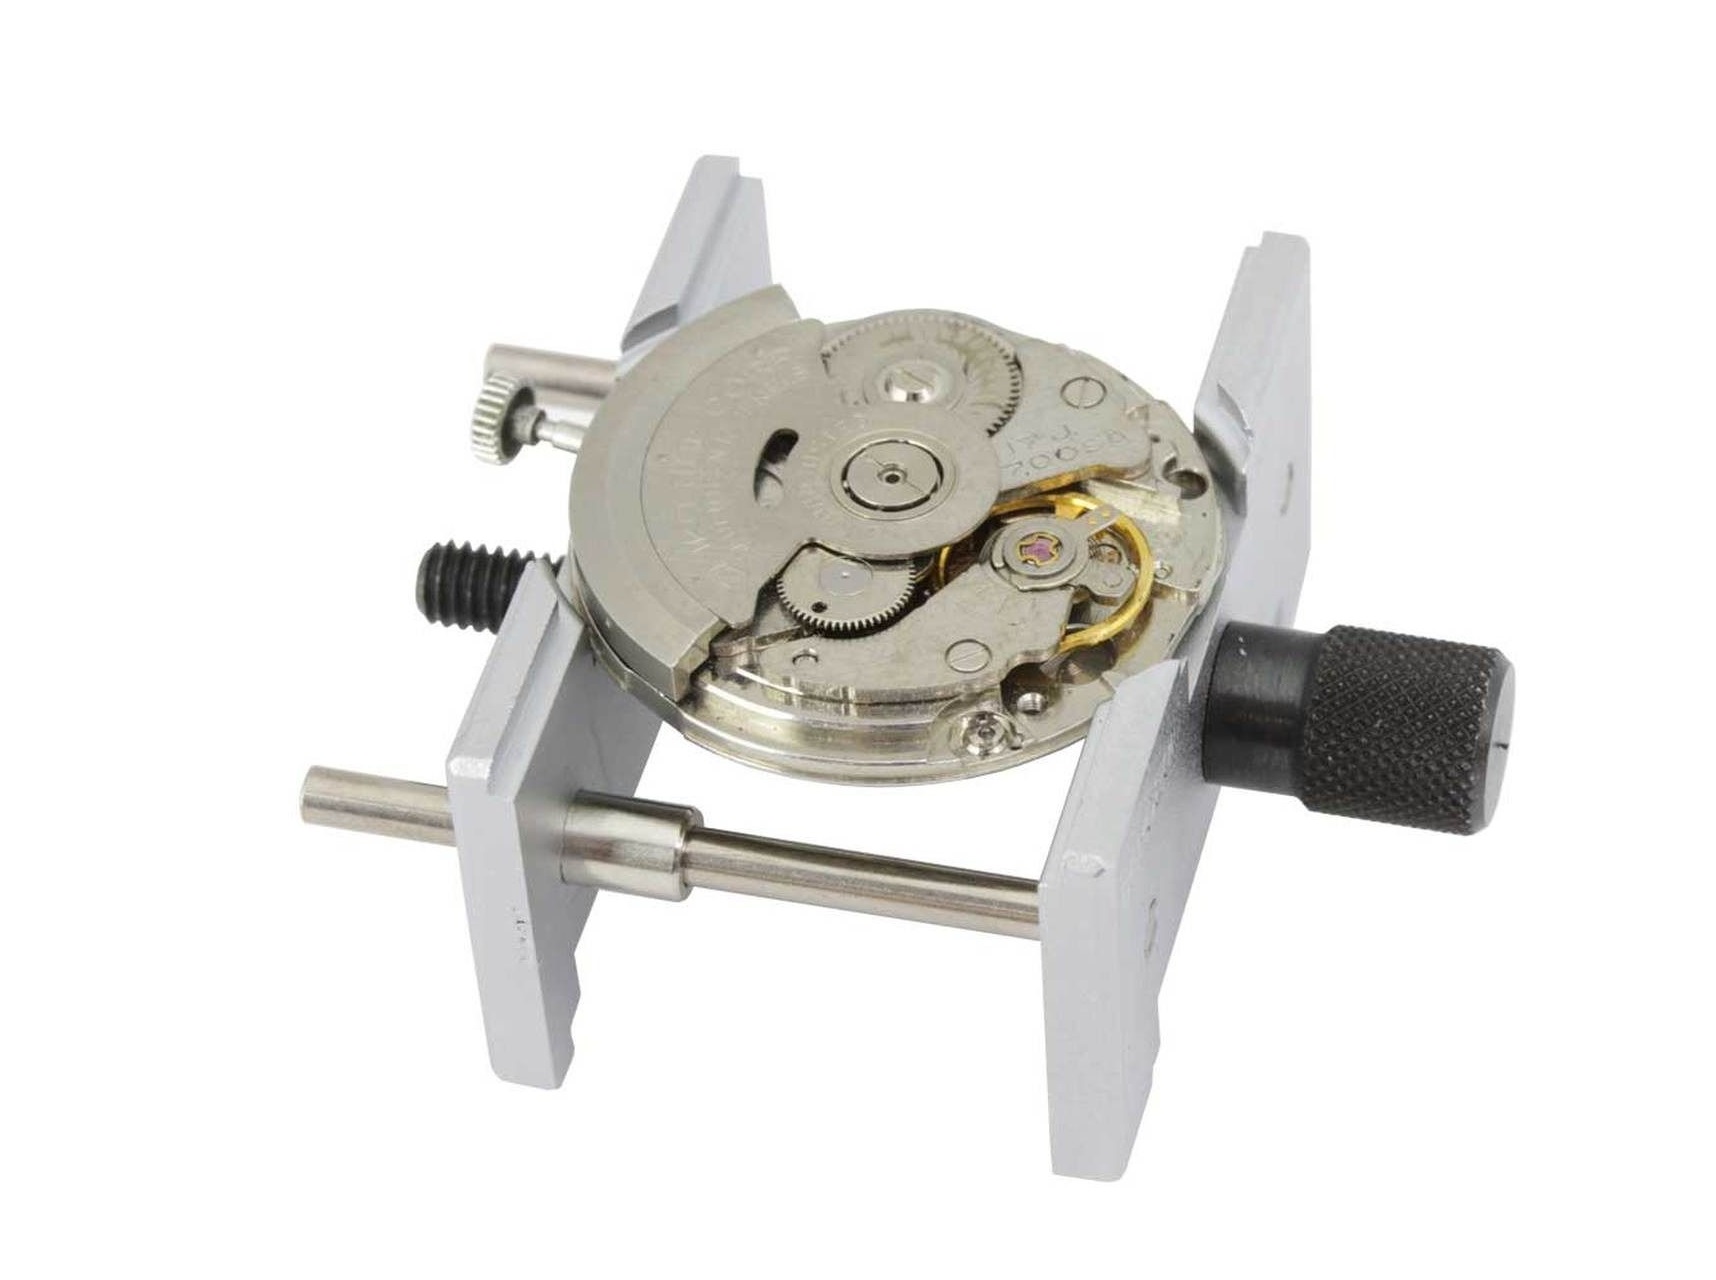 3st skruvstäd/klockhållare i metall (Klocka/urmakeri verktyg)